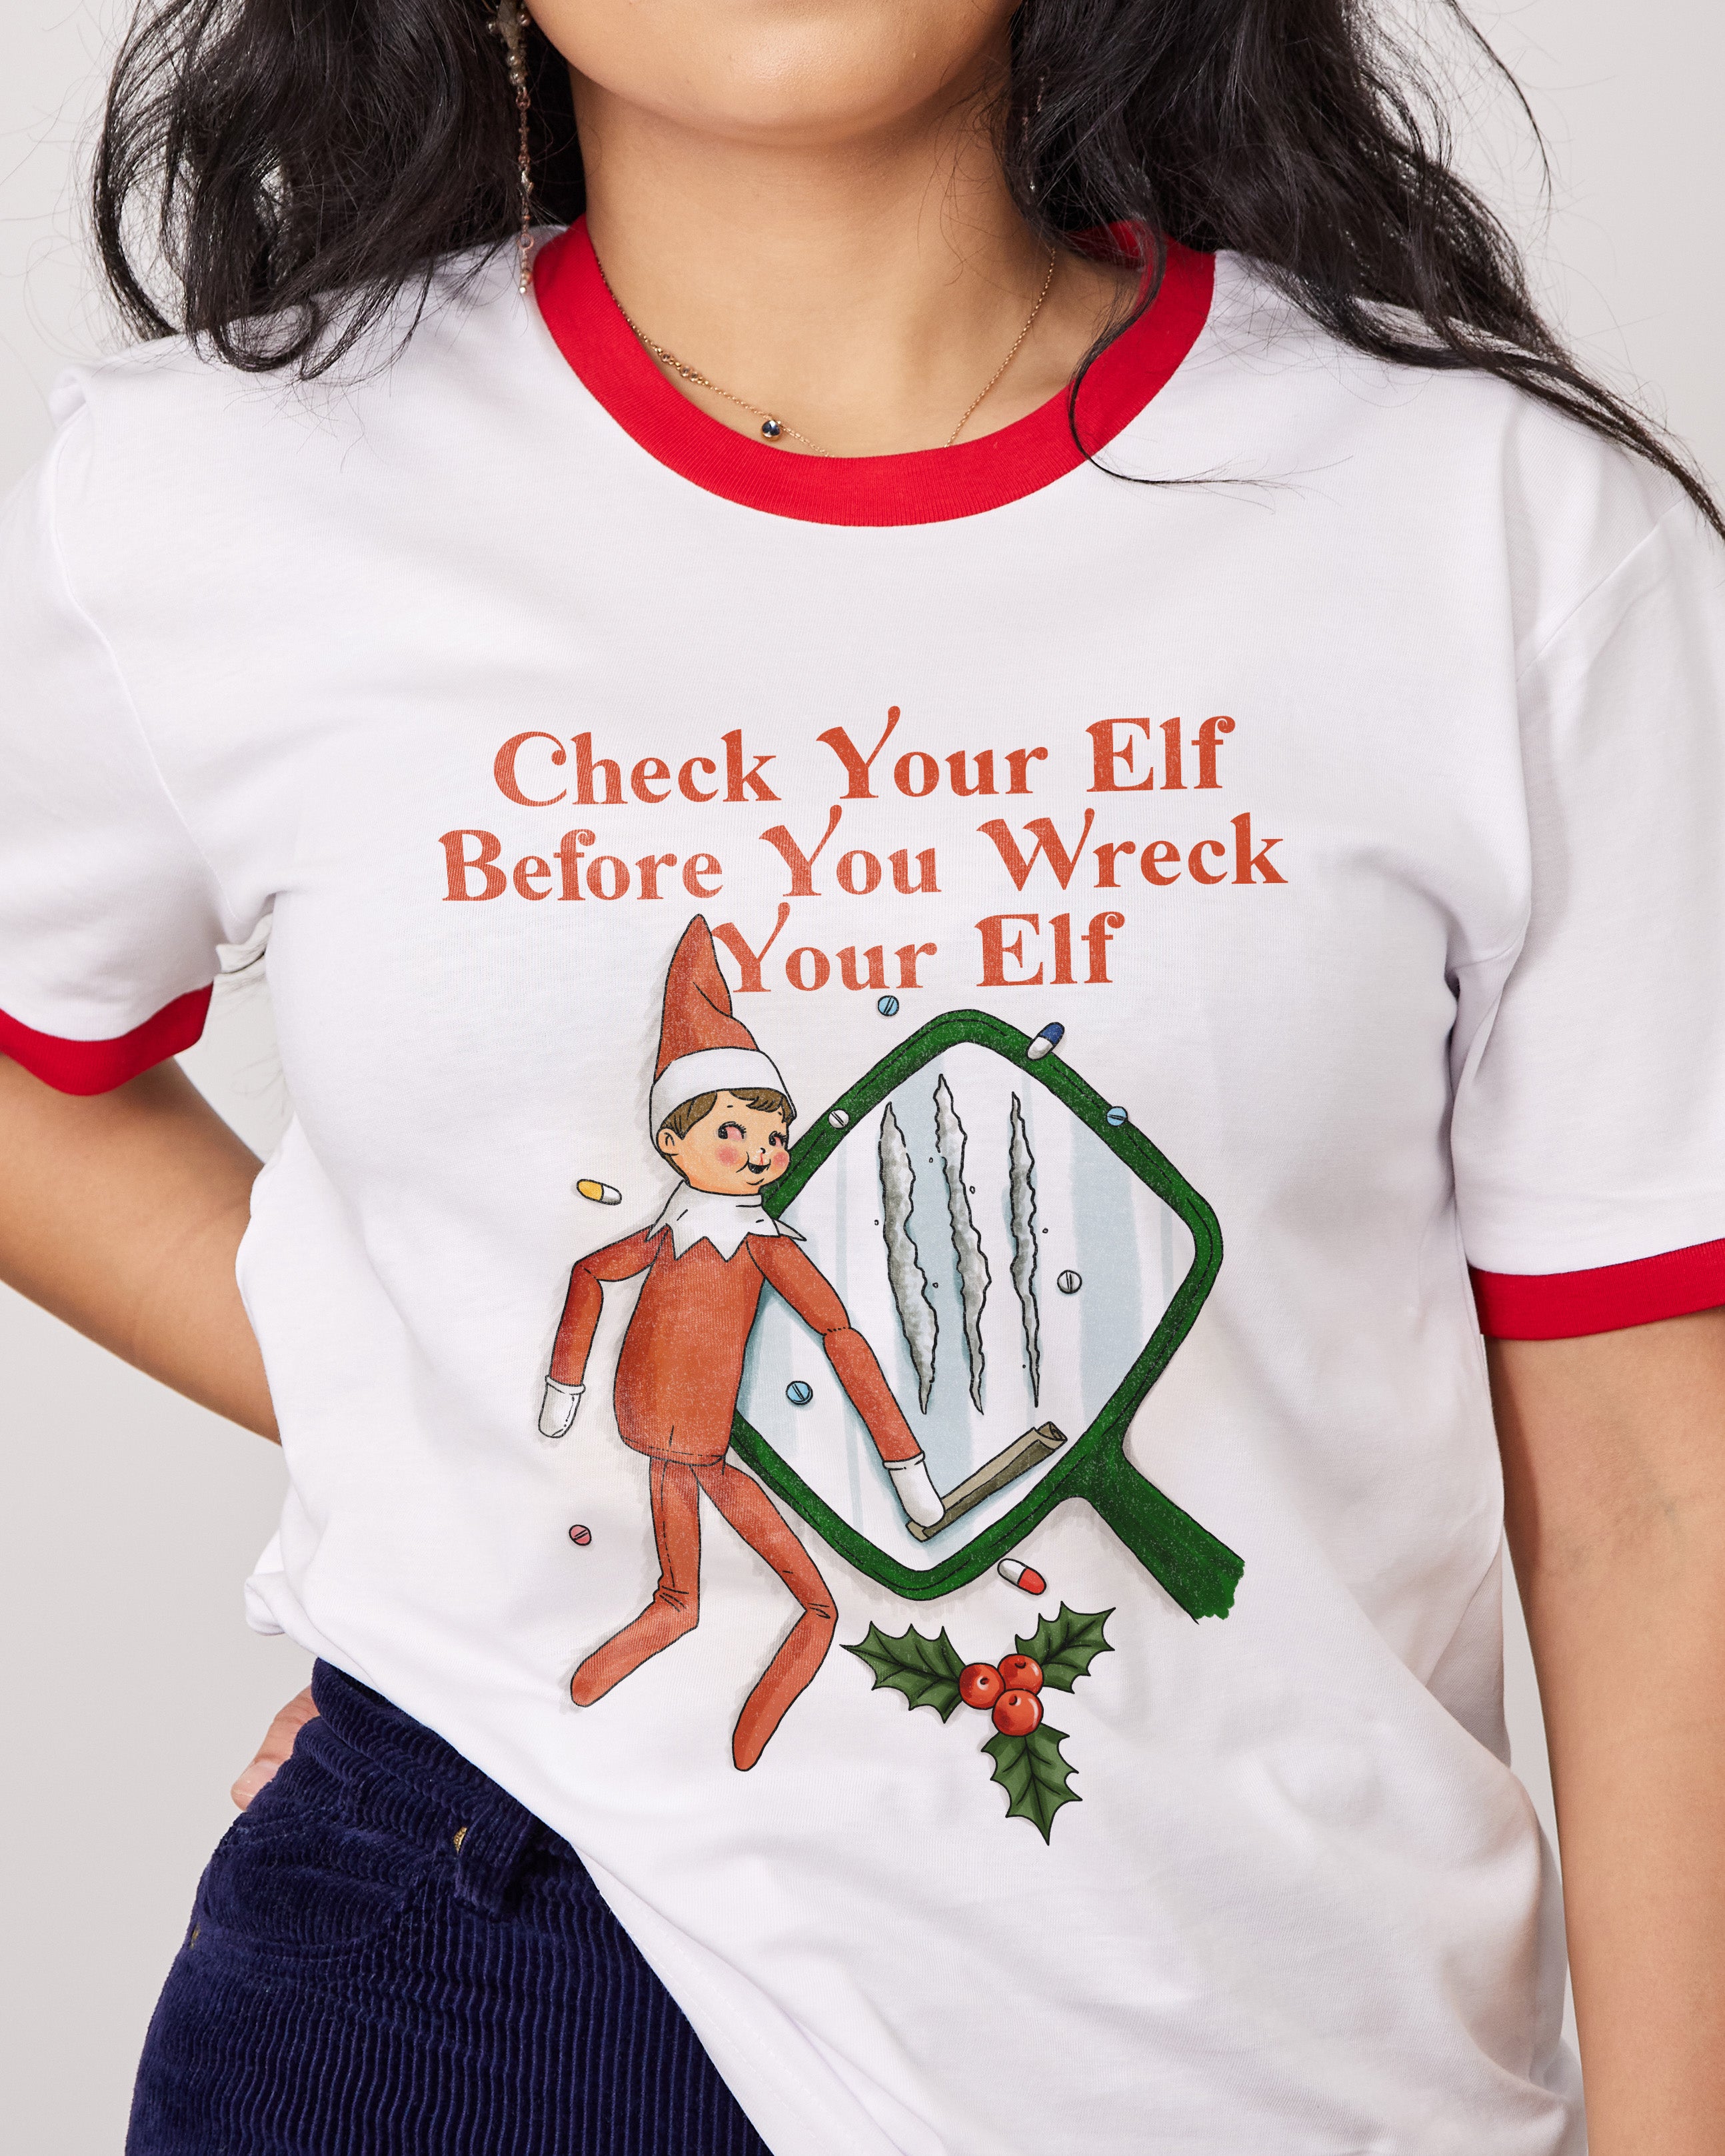 Check your Elf T-Shirt Australia Online Red Ringer